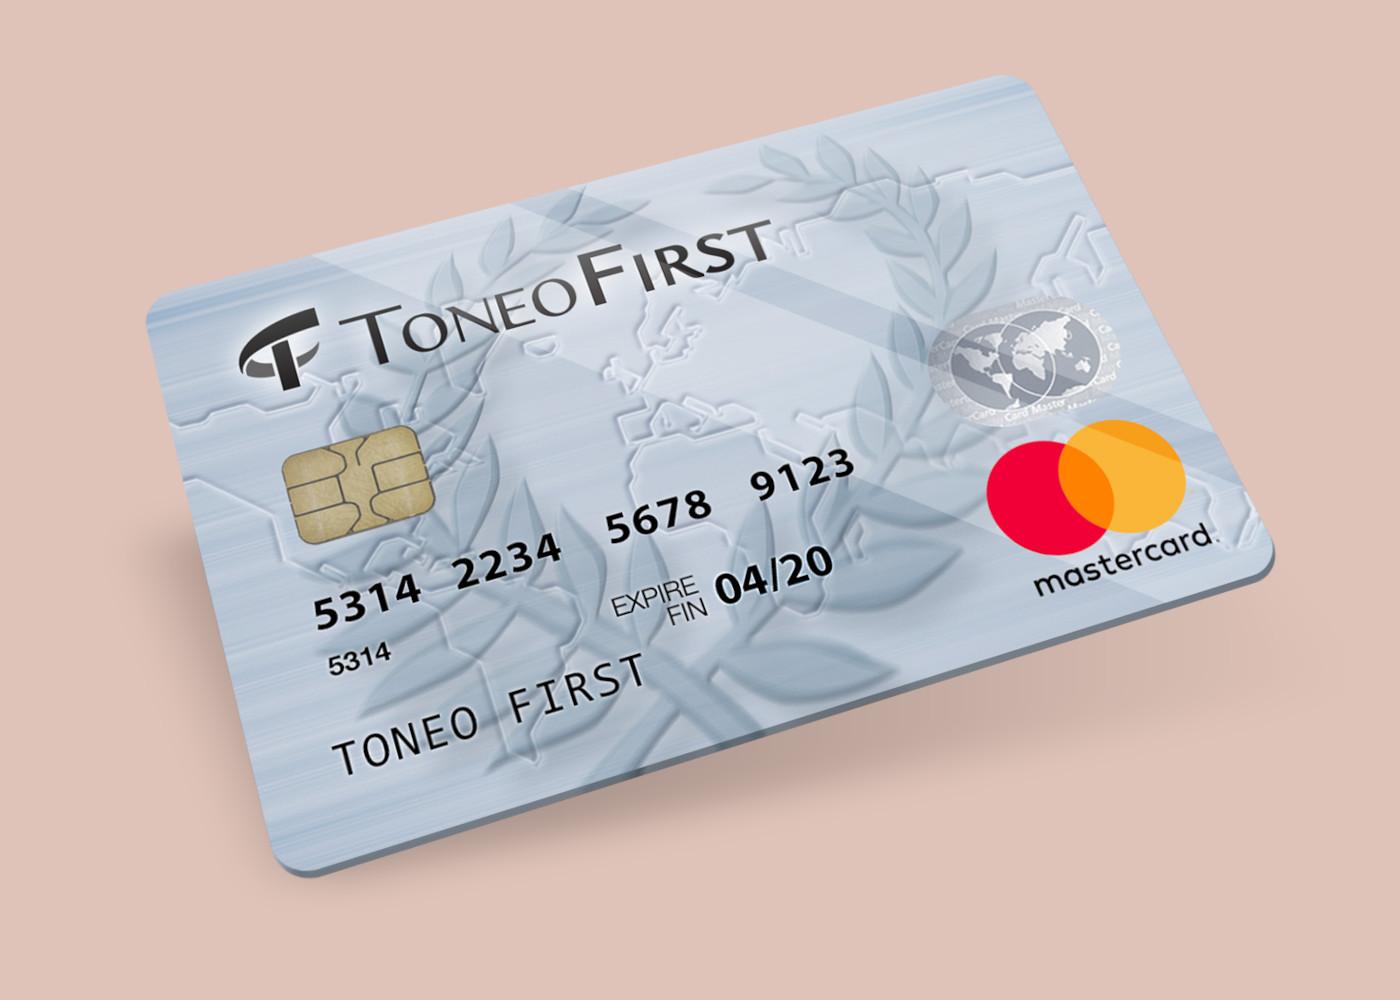 Toneo First Mastercard €15 Gift Card EU, $19.63